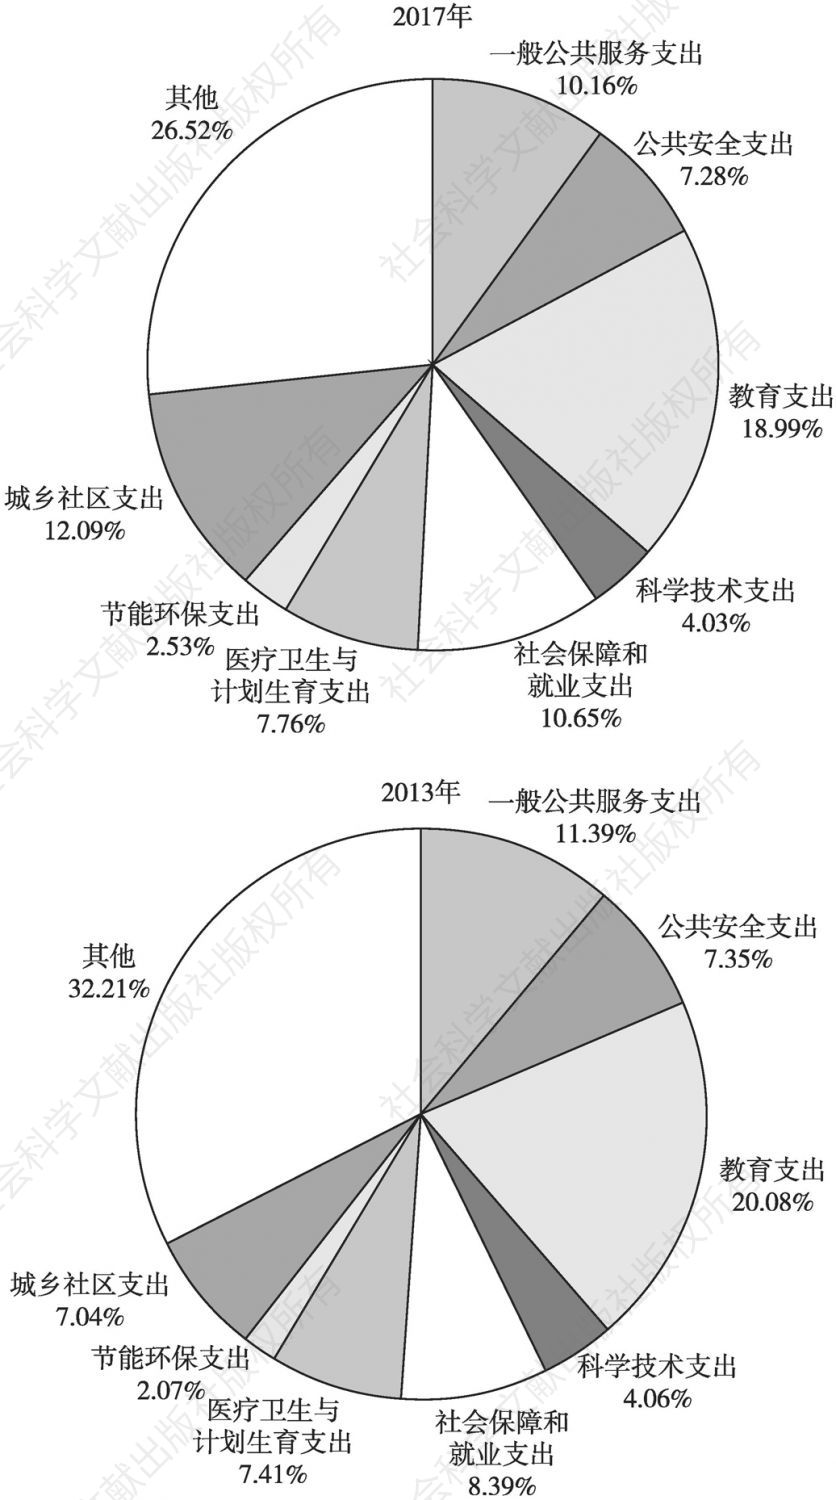 图30 2013年与2017年浙江省“财政八项”及其他支出占比